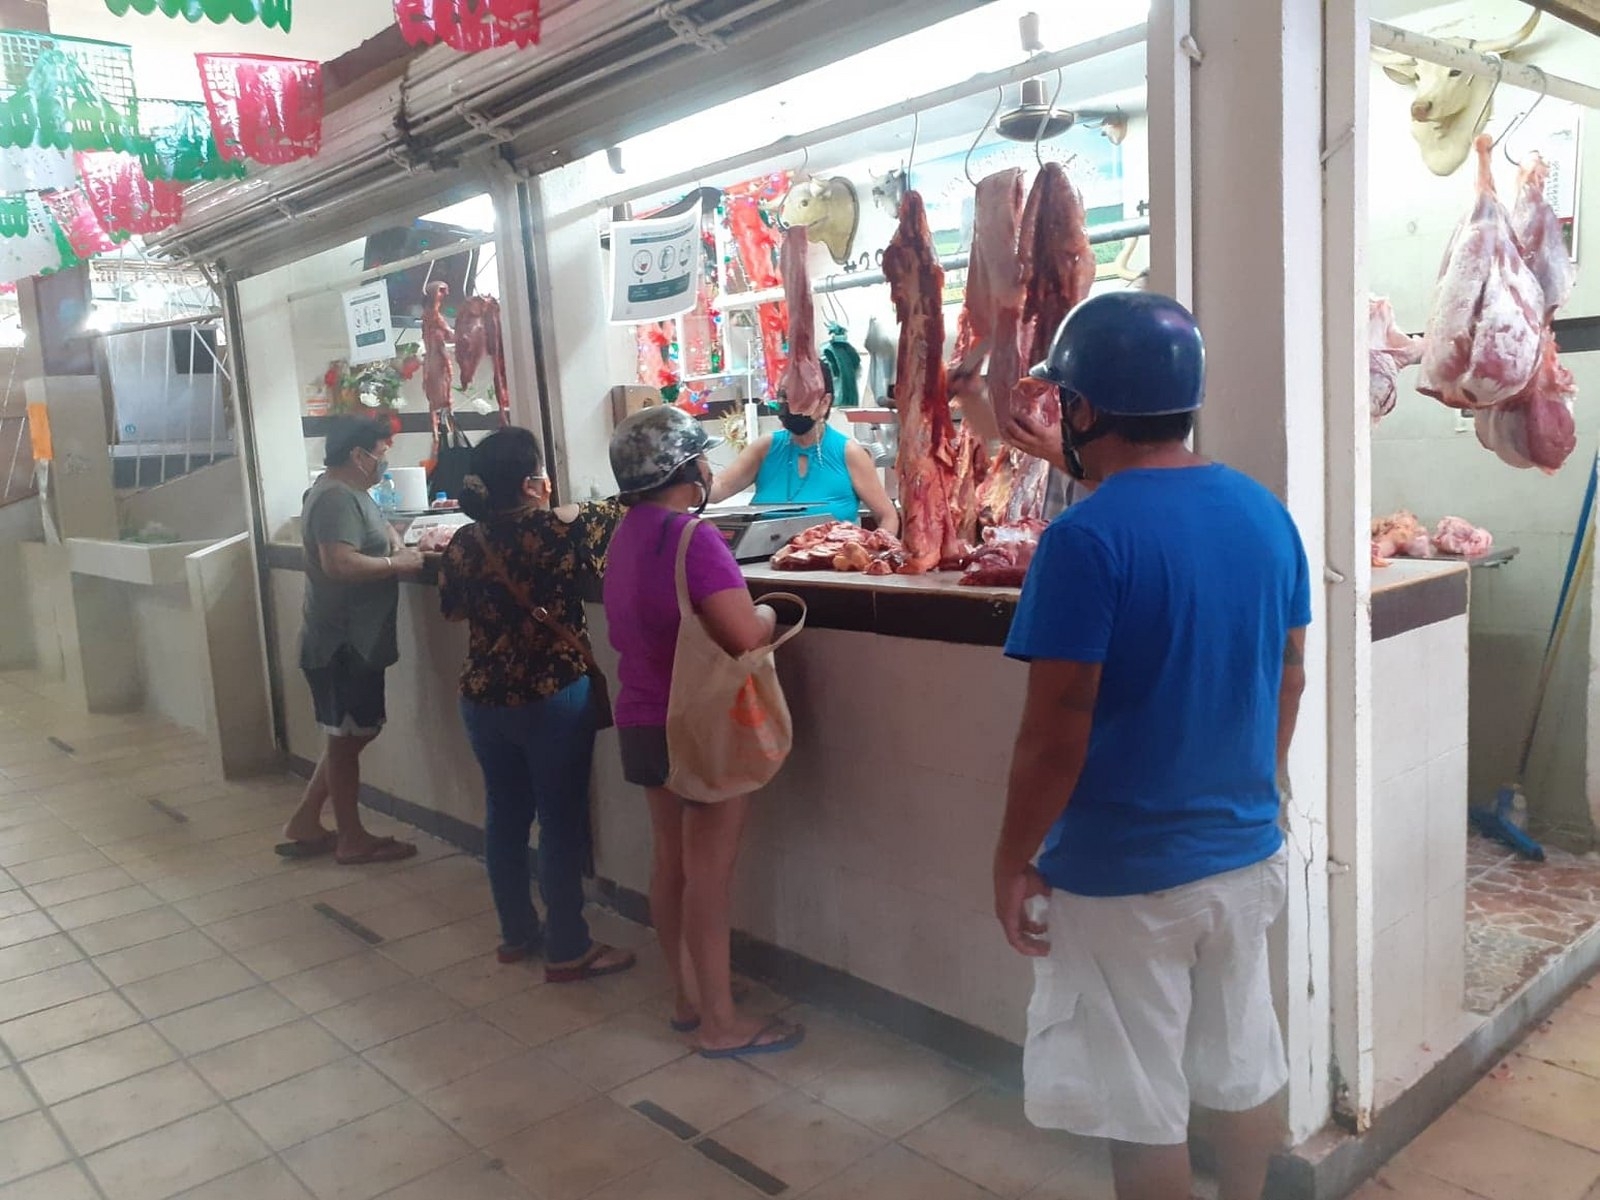 Los proveedores de los carniceros de Cozumel provienen en su mayoría del Estado de Yucatán, quienes incrementaron el costo de sus productos